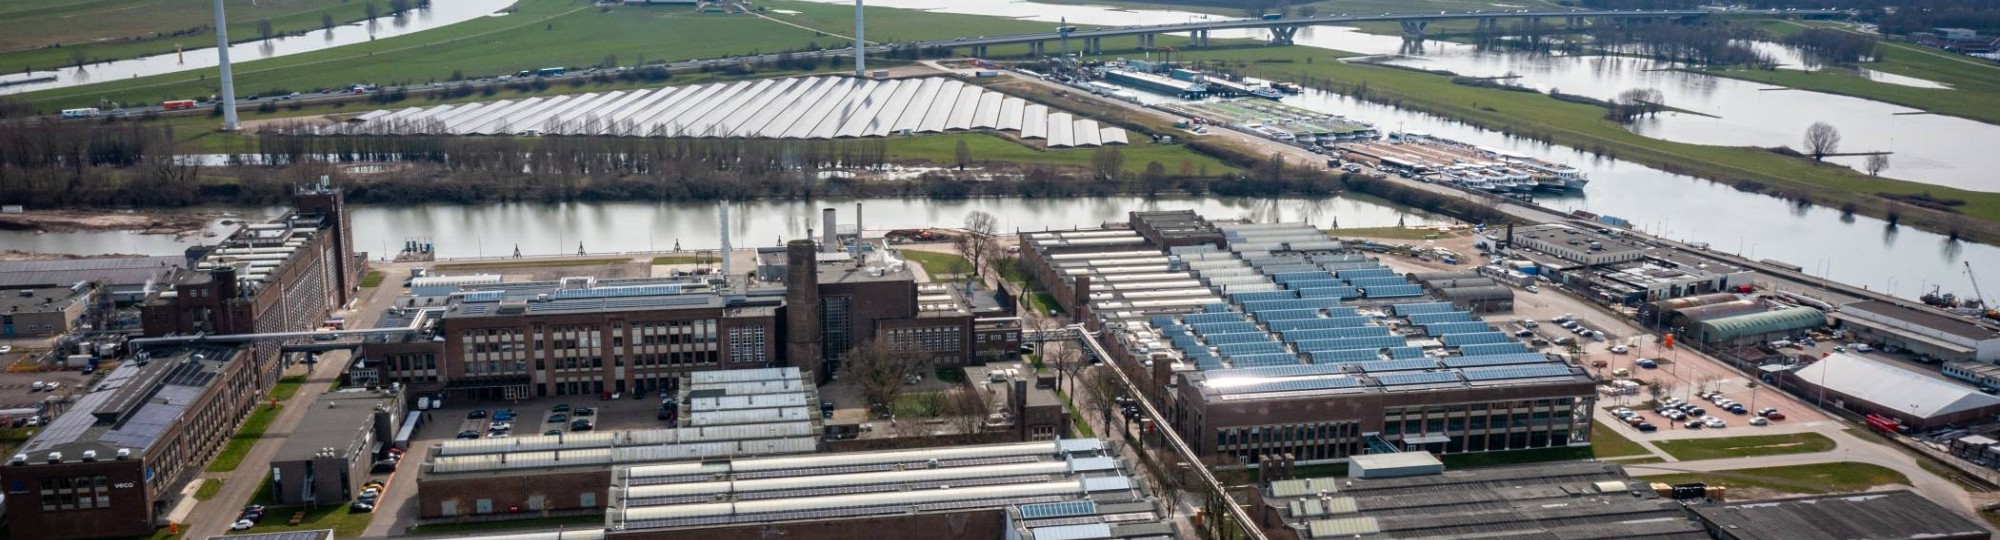 510432 Luchtfoto van het Industriepark Kleefse Waard (IPKW) met zonnepanelen. De Academie Engineering en Automotive werkt hier aan diverse projecten waaronder projecten met waterstof.